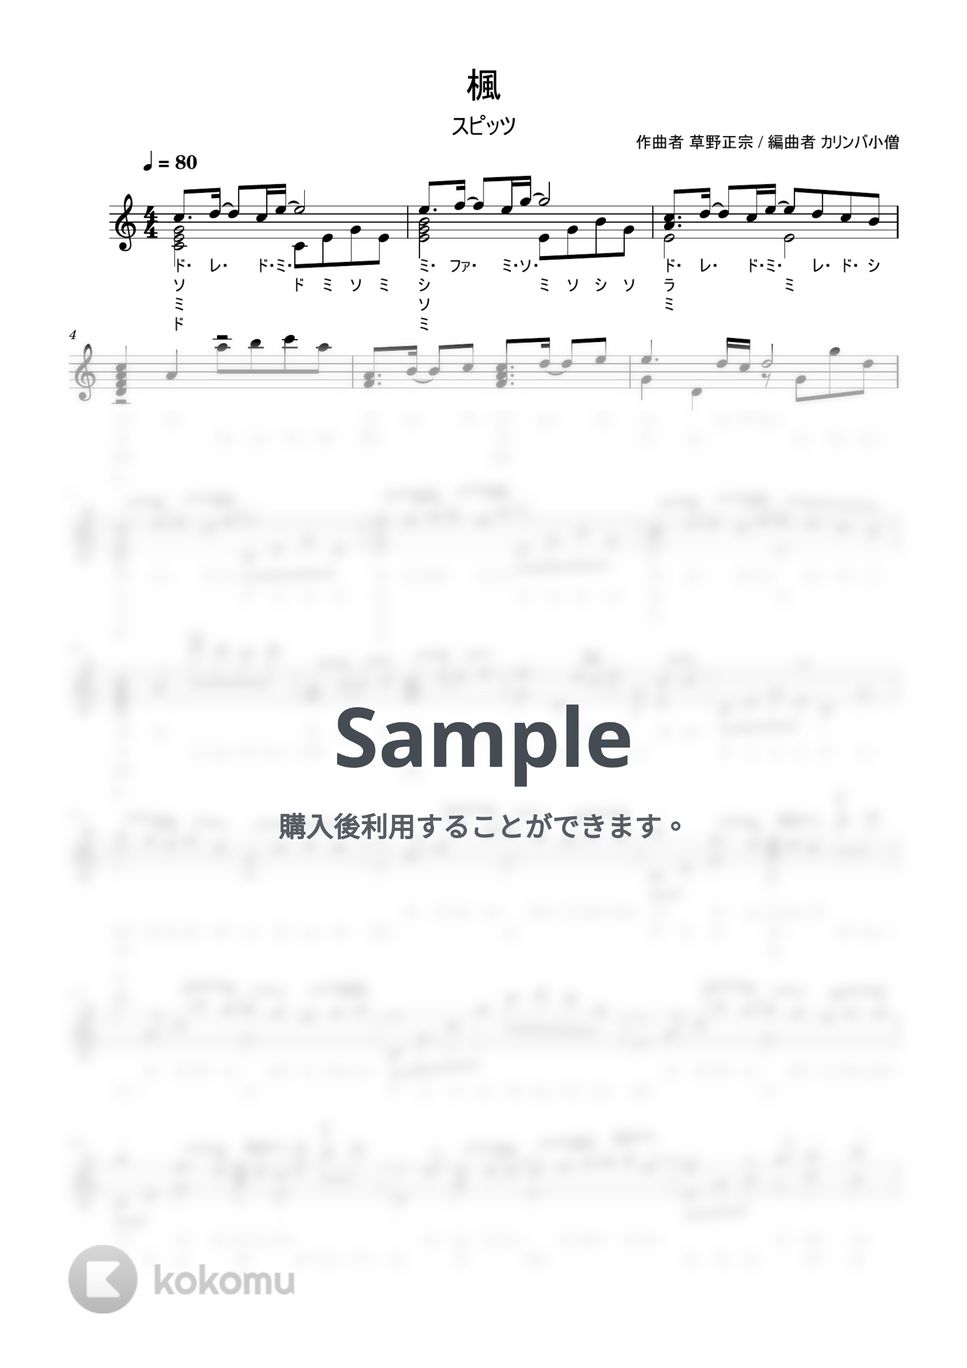 スピッツ - 楓 (ドレミ表記 演奏付き カリンバ楽譜) by カリンバ小僧